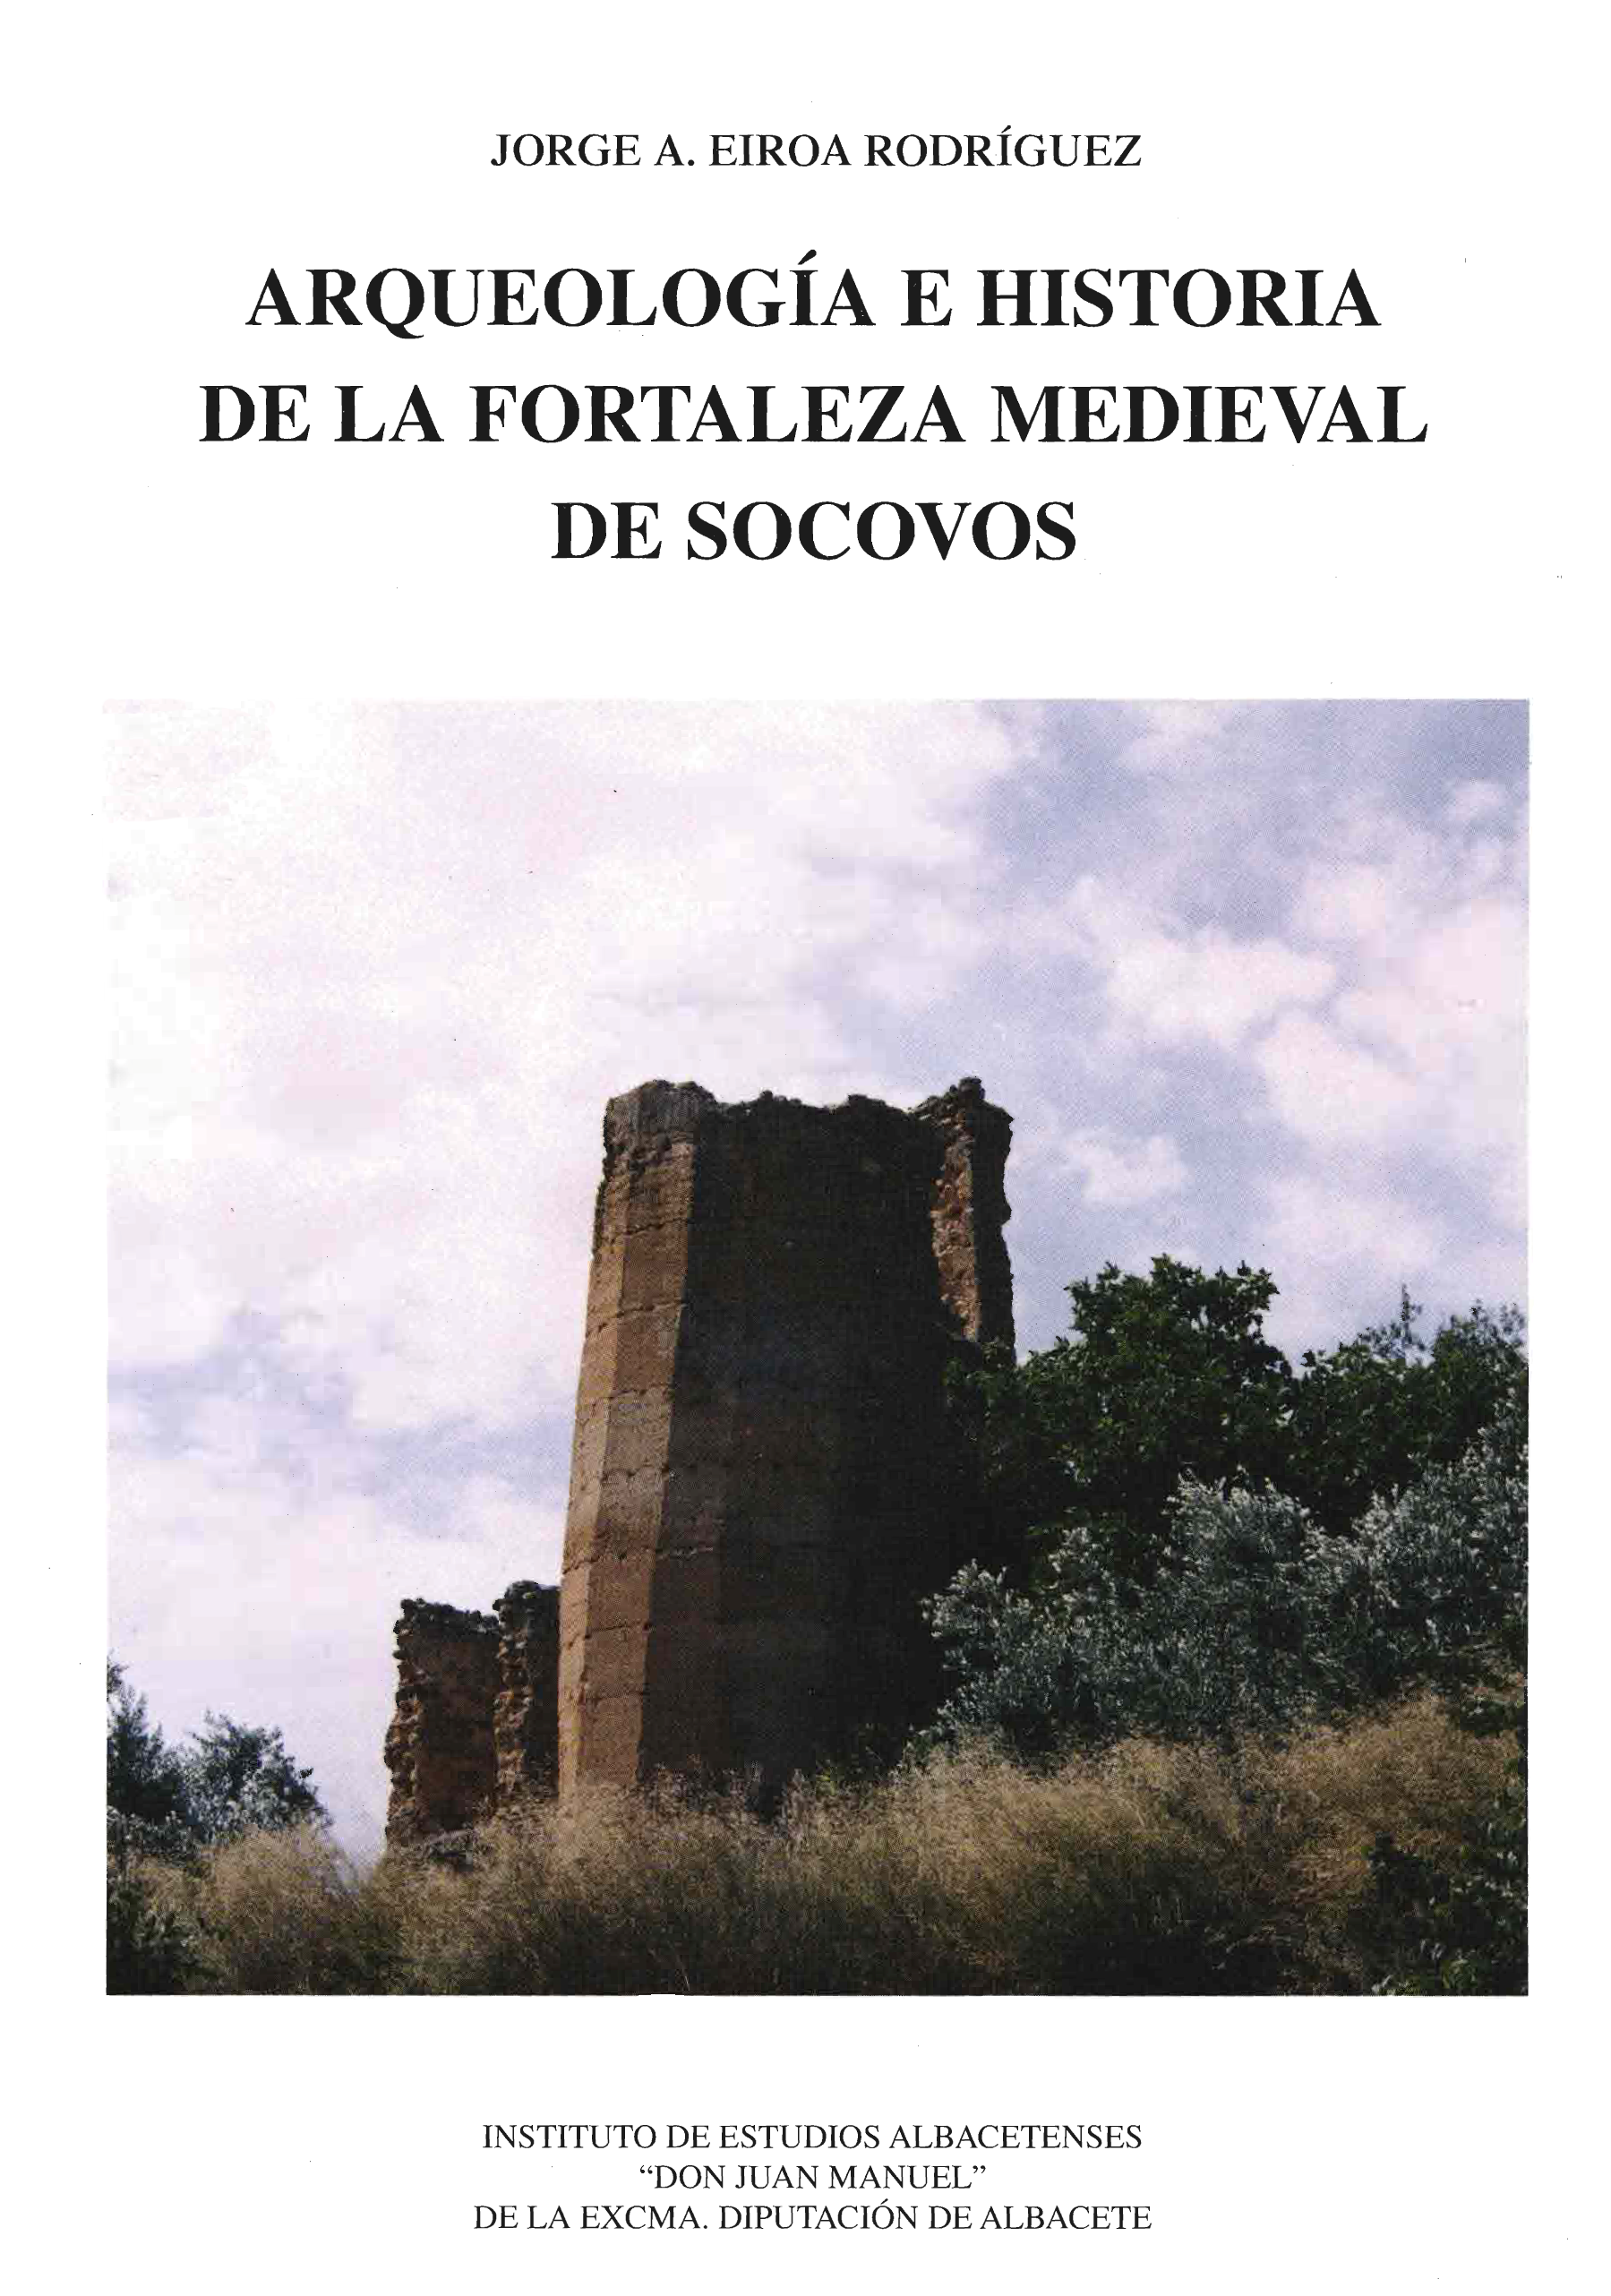 Imagen de portada del libro Arqueología e historia de la fortaleza medieval de Socovos